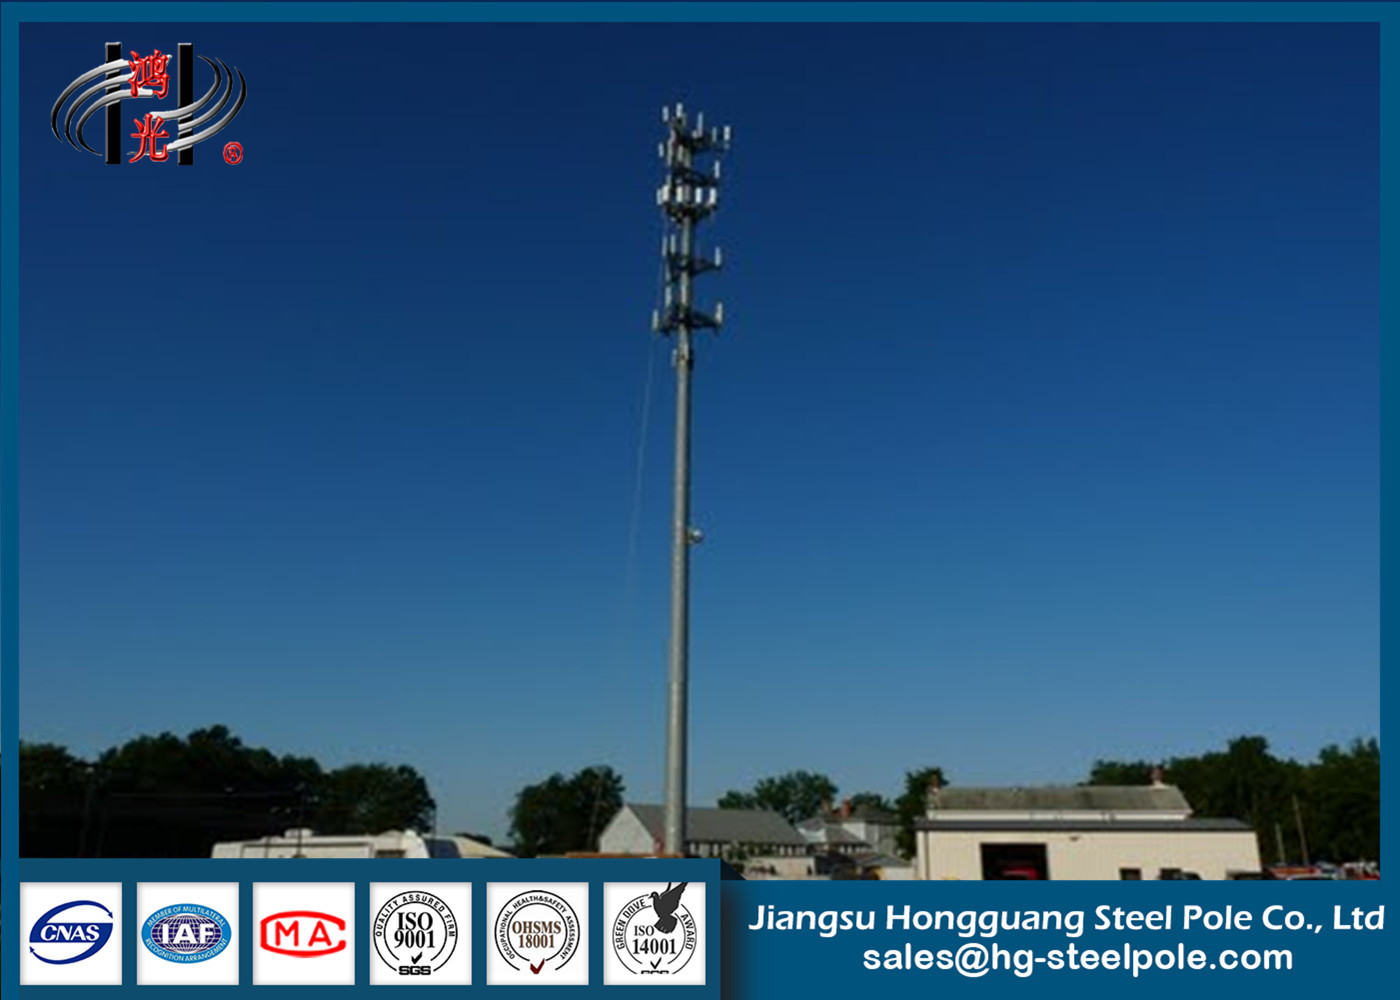 Cep Telefonu Sinyali İçin Toz Boya Galvanizli 3G Telekomünikasyon Kuleleri